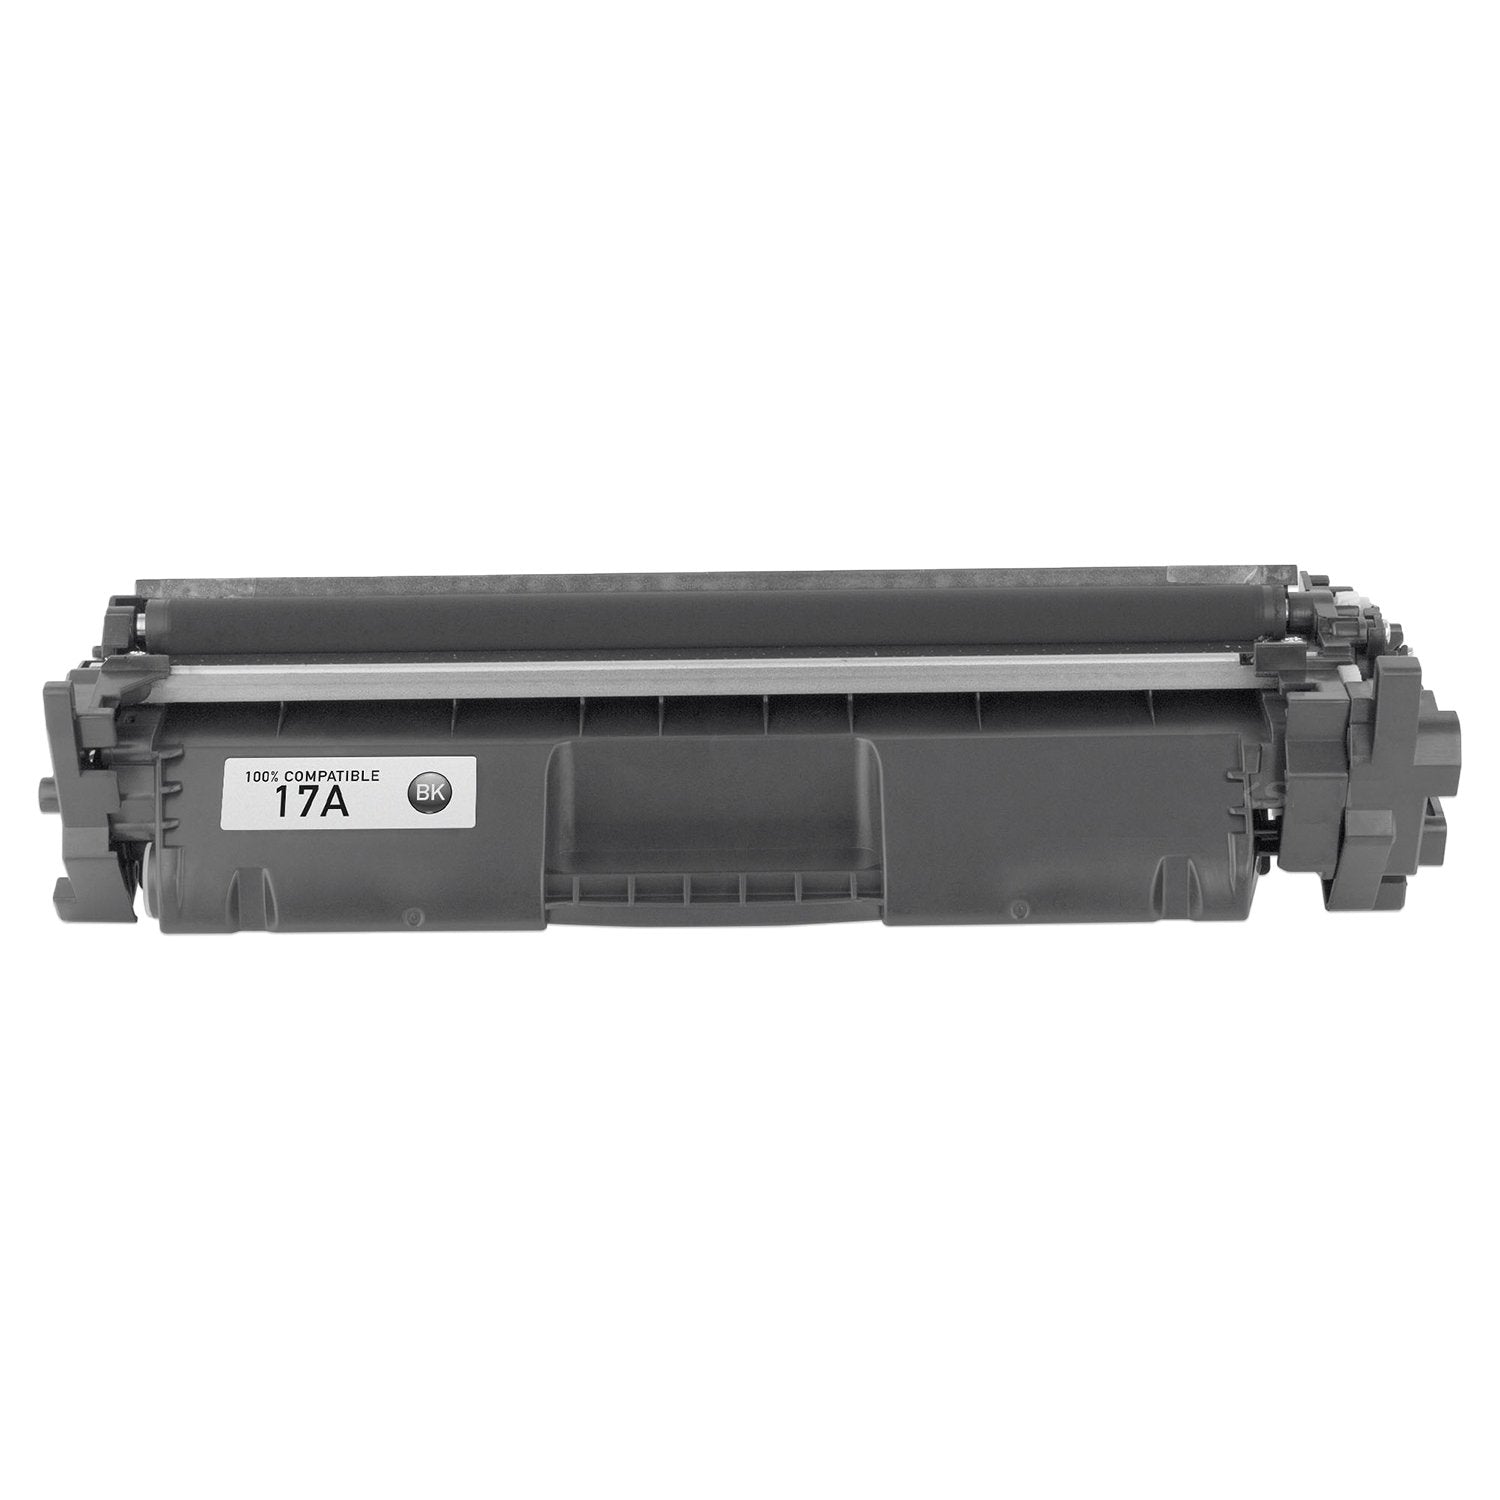 Absolute Toner Compatible CF217A HP 17A Black Toner Cartridge | Absolute Toner HP Toner Cartridges